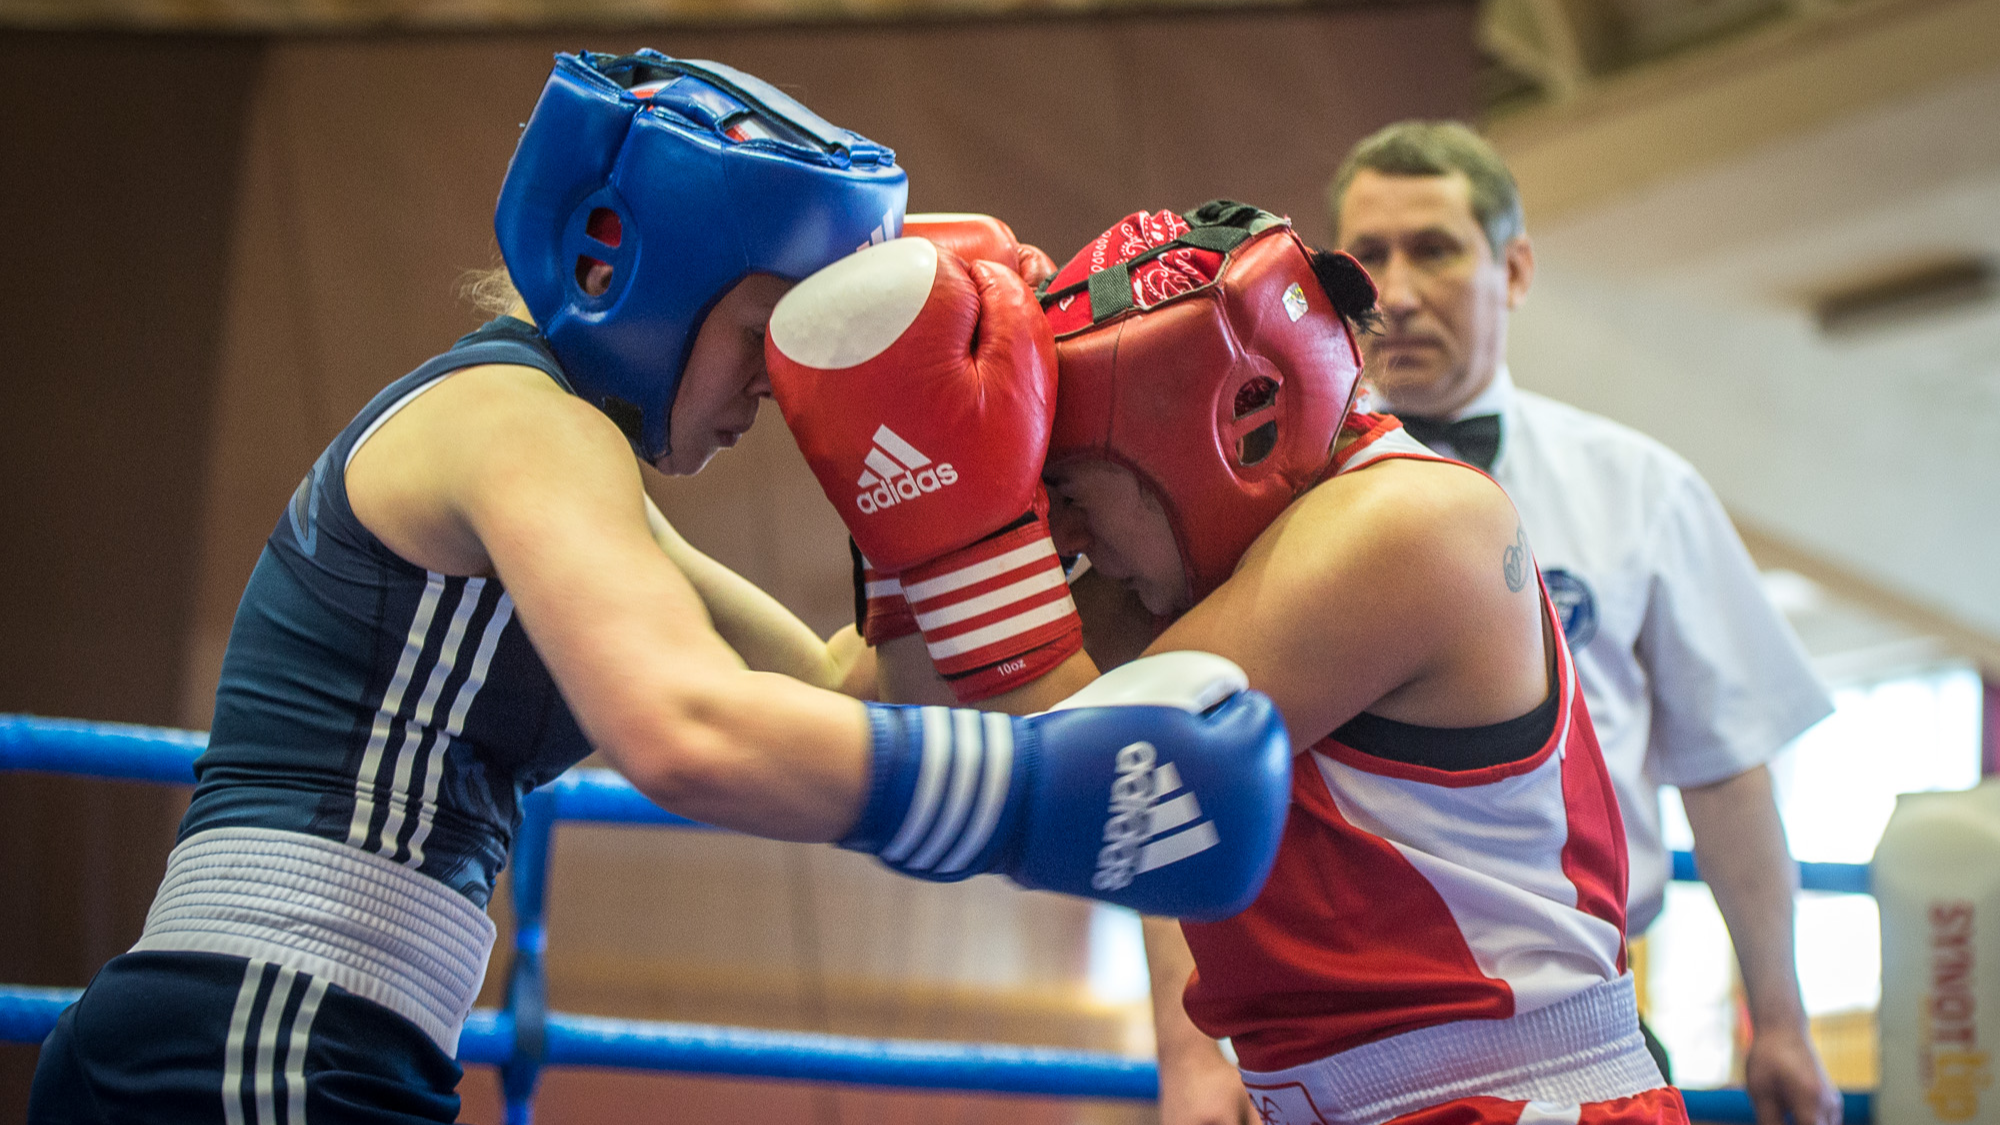 Starptautiskās sacensības “3. Rīgas sieviešu boksa kauss 2020” jau šajā nedēļas nogalē